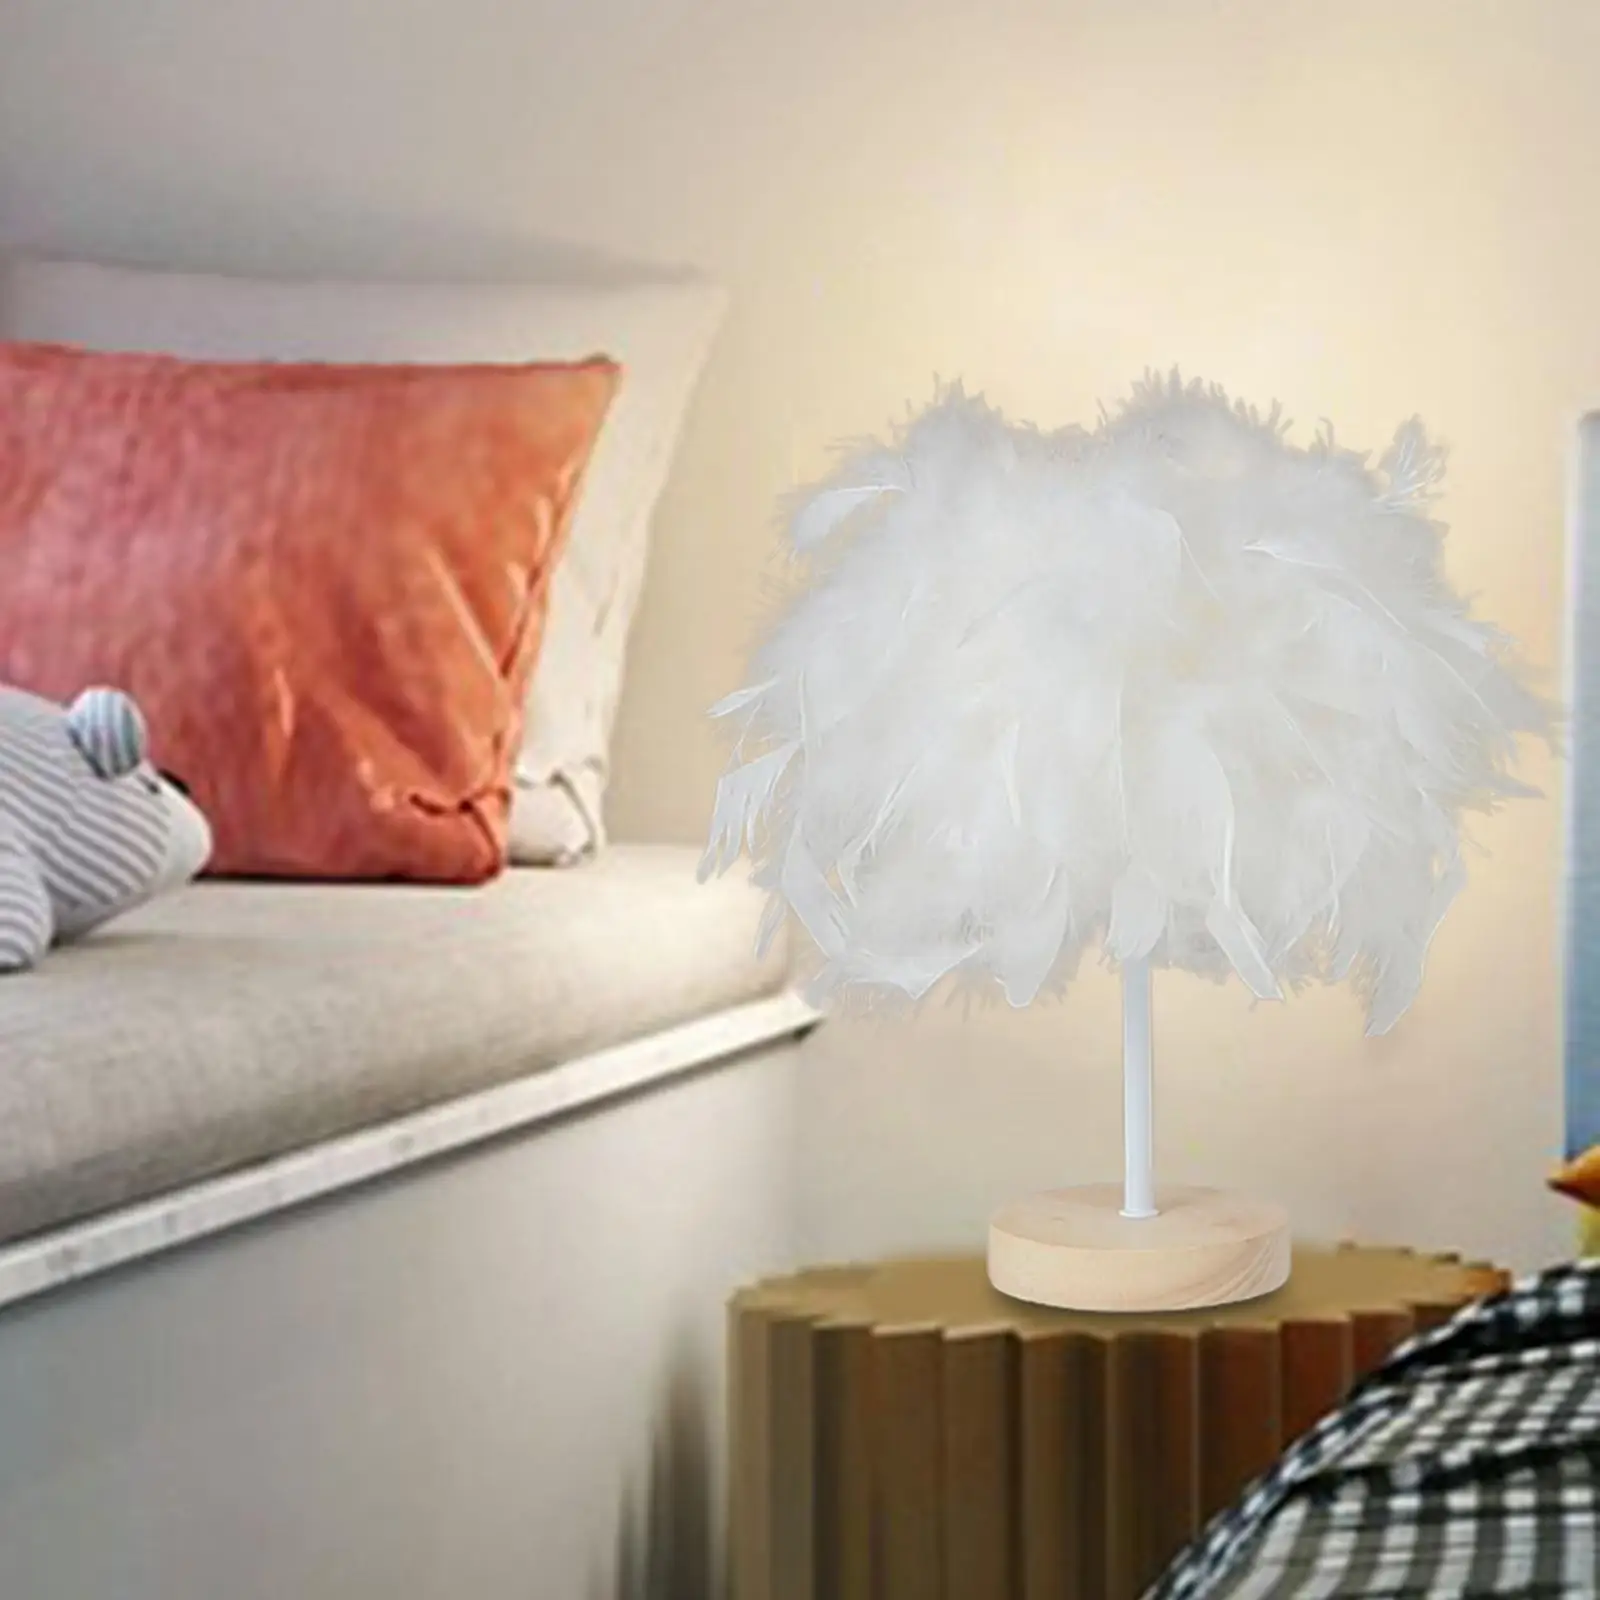 Elegant LED Table Lamp Desk Light Romantic Lighting Reading Lamp Atmosphere Light for Living Room Bedroom Dorm Home Decor